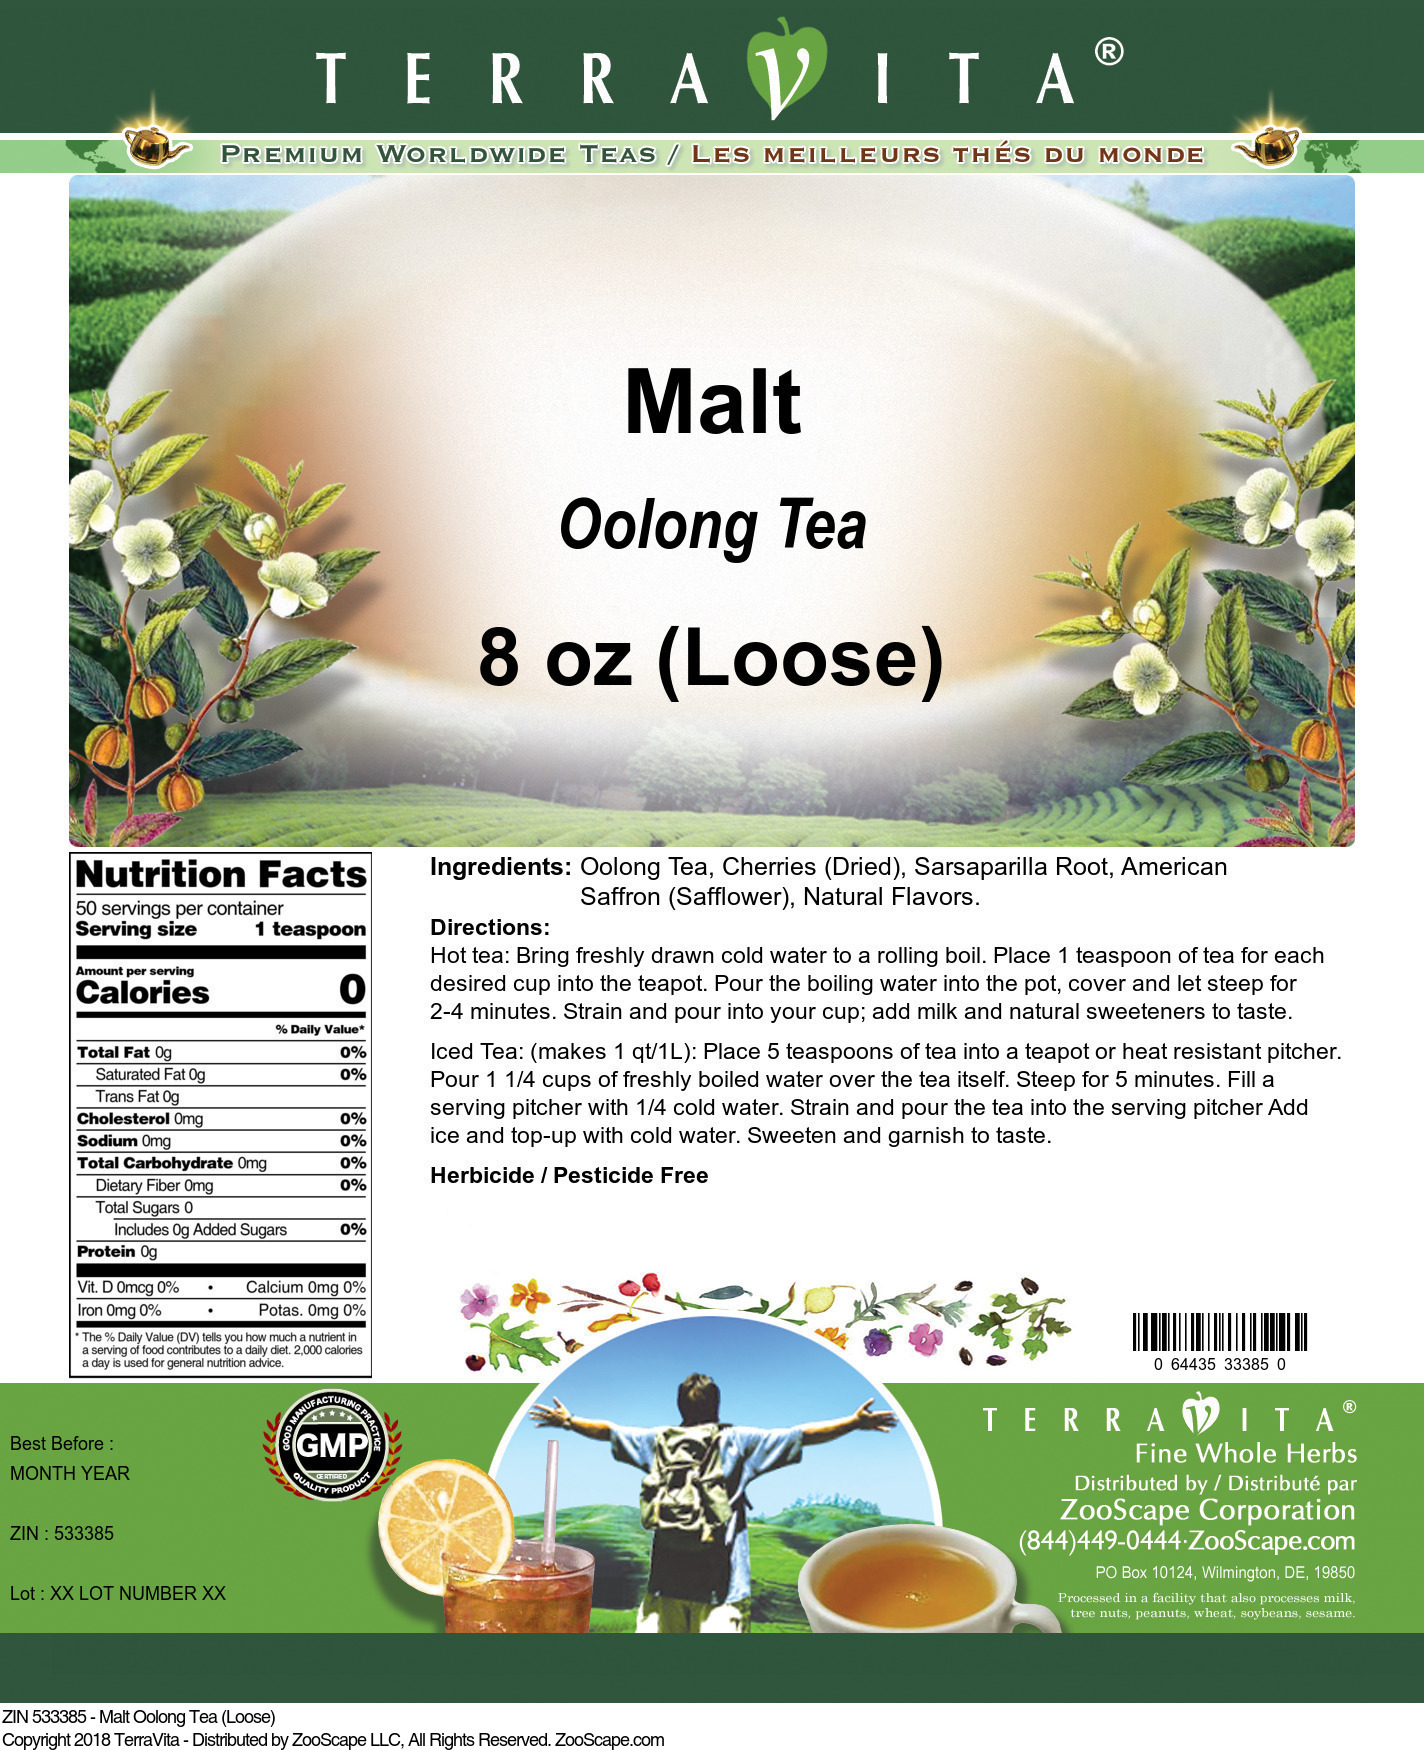 Malt Oolong Tea (Loose) - Label